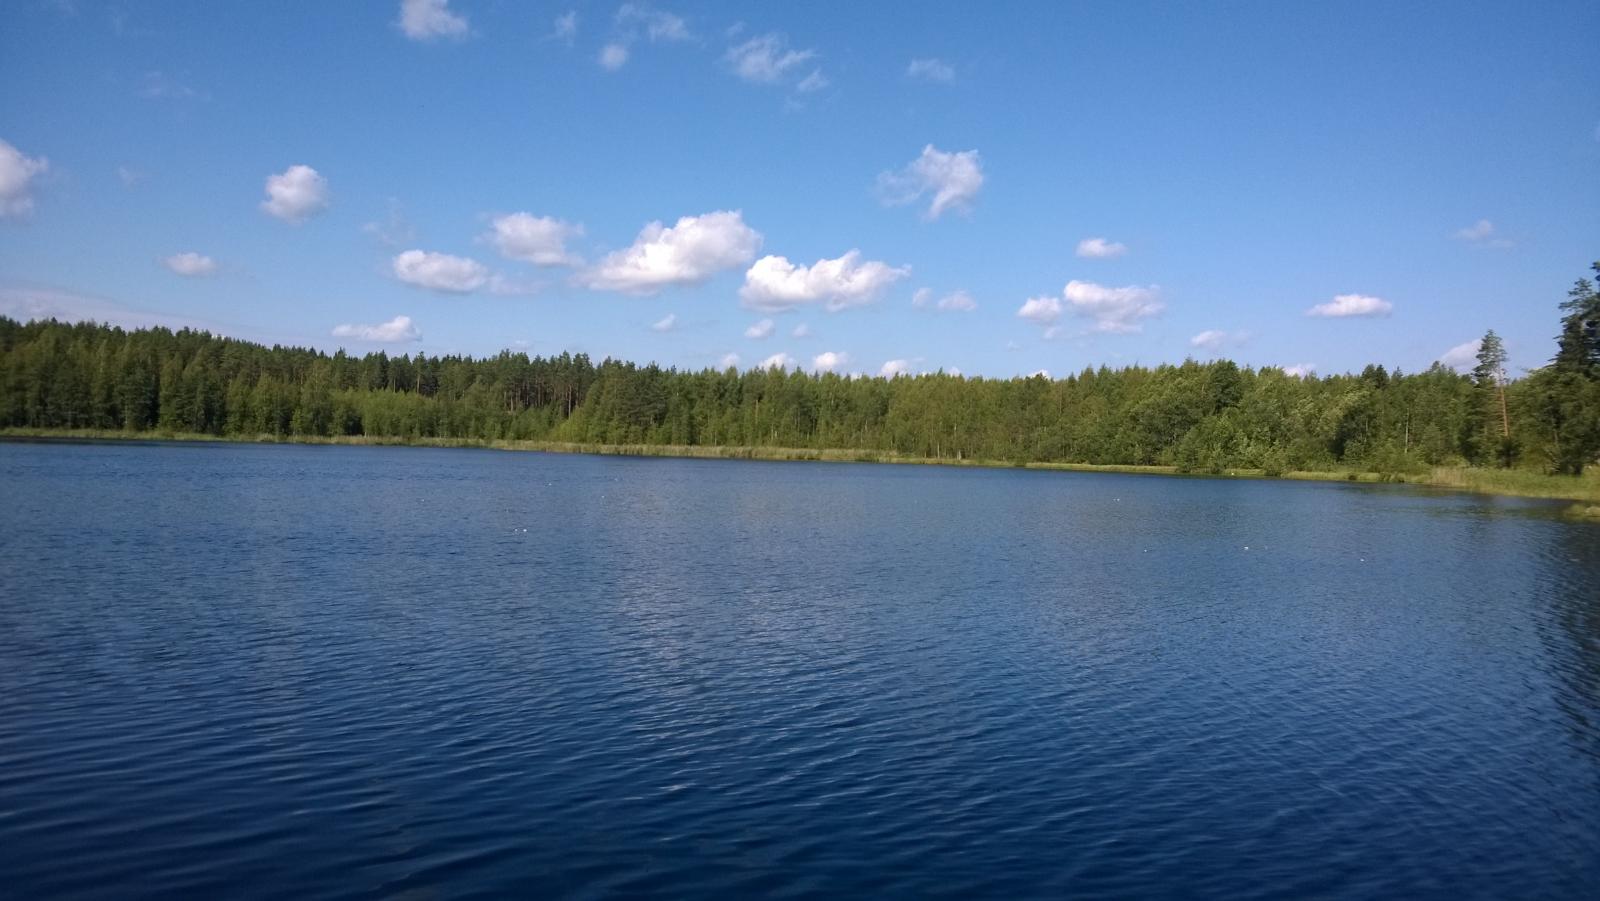 Kesäisessä järvimaisemassa veden pinta väreilee hieman. Taivaalla on muutamia poutapilviä.